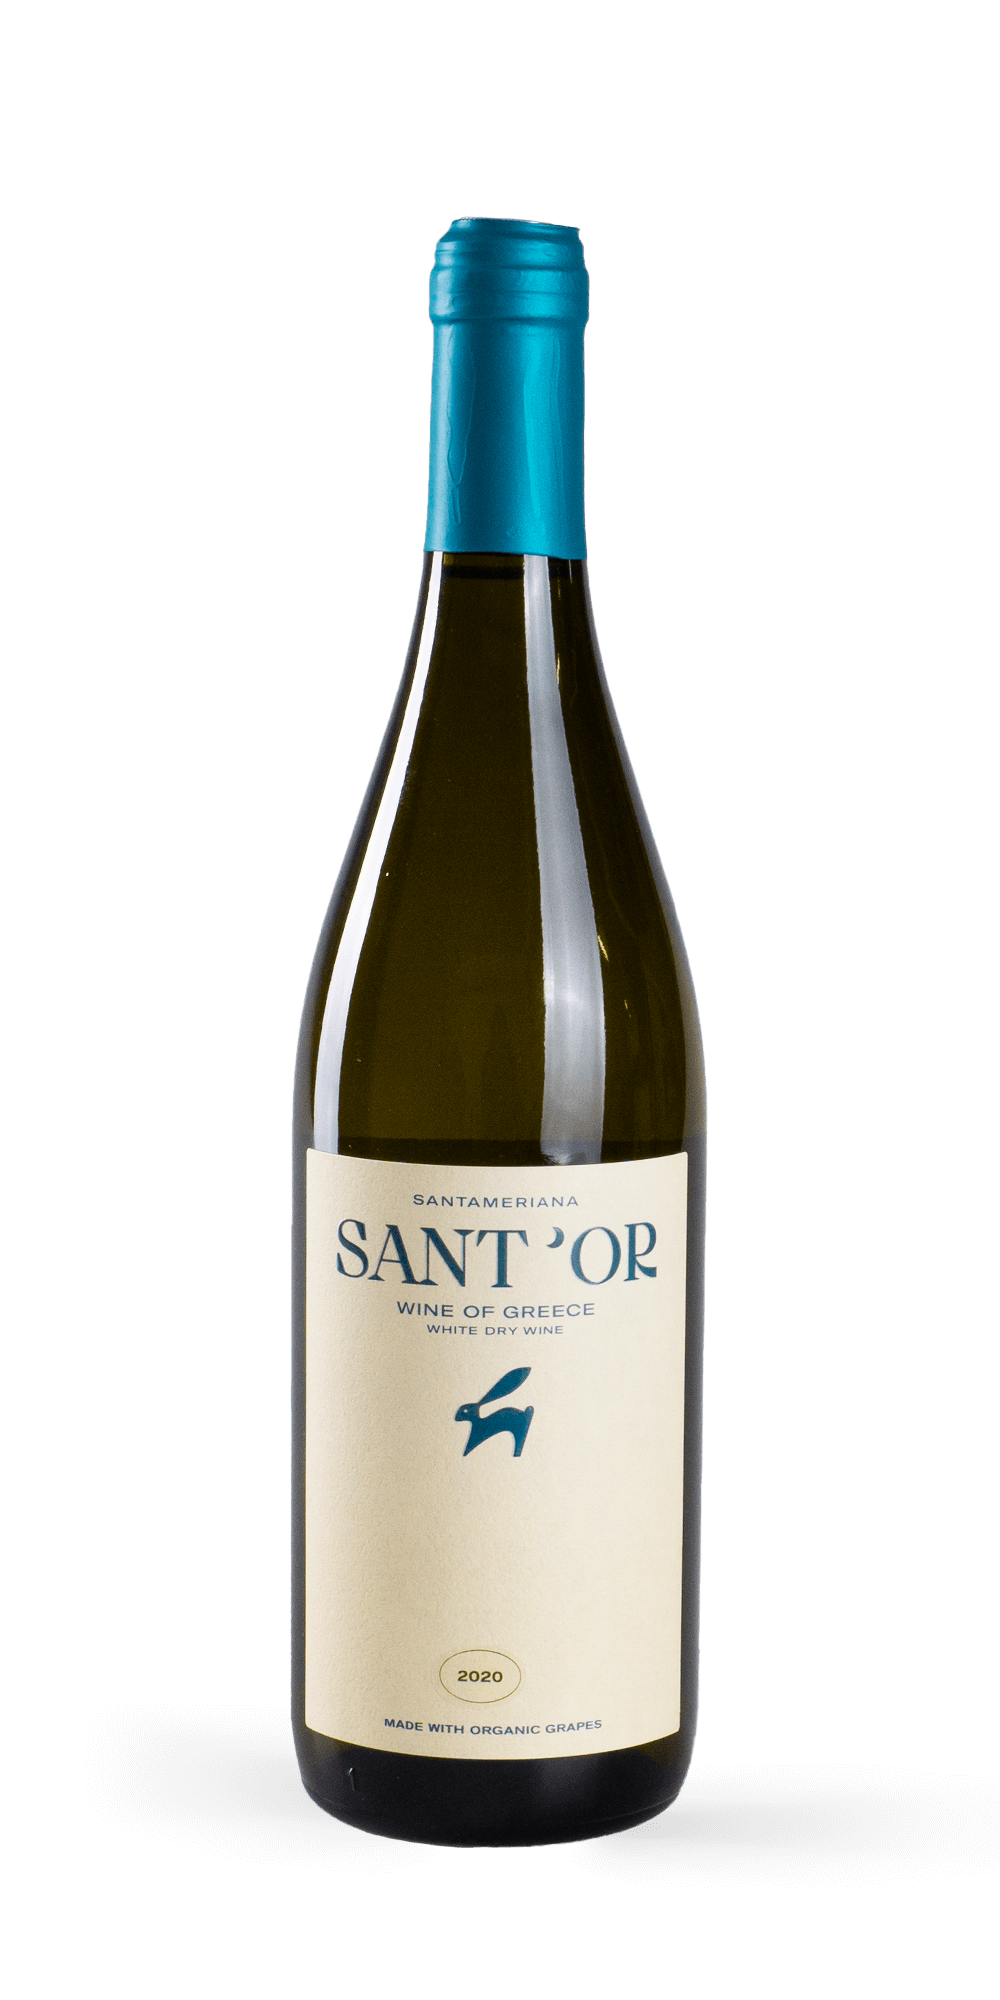 Santameriana Natur BIO 2020 - SANT'OR Wines